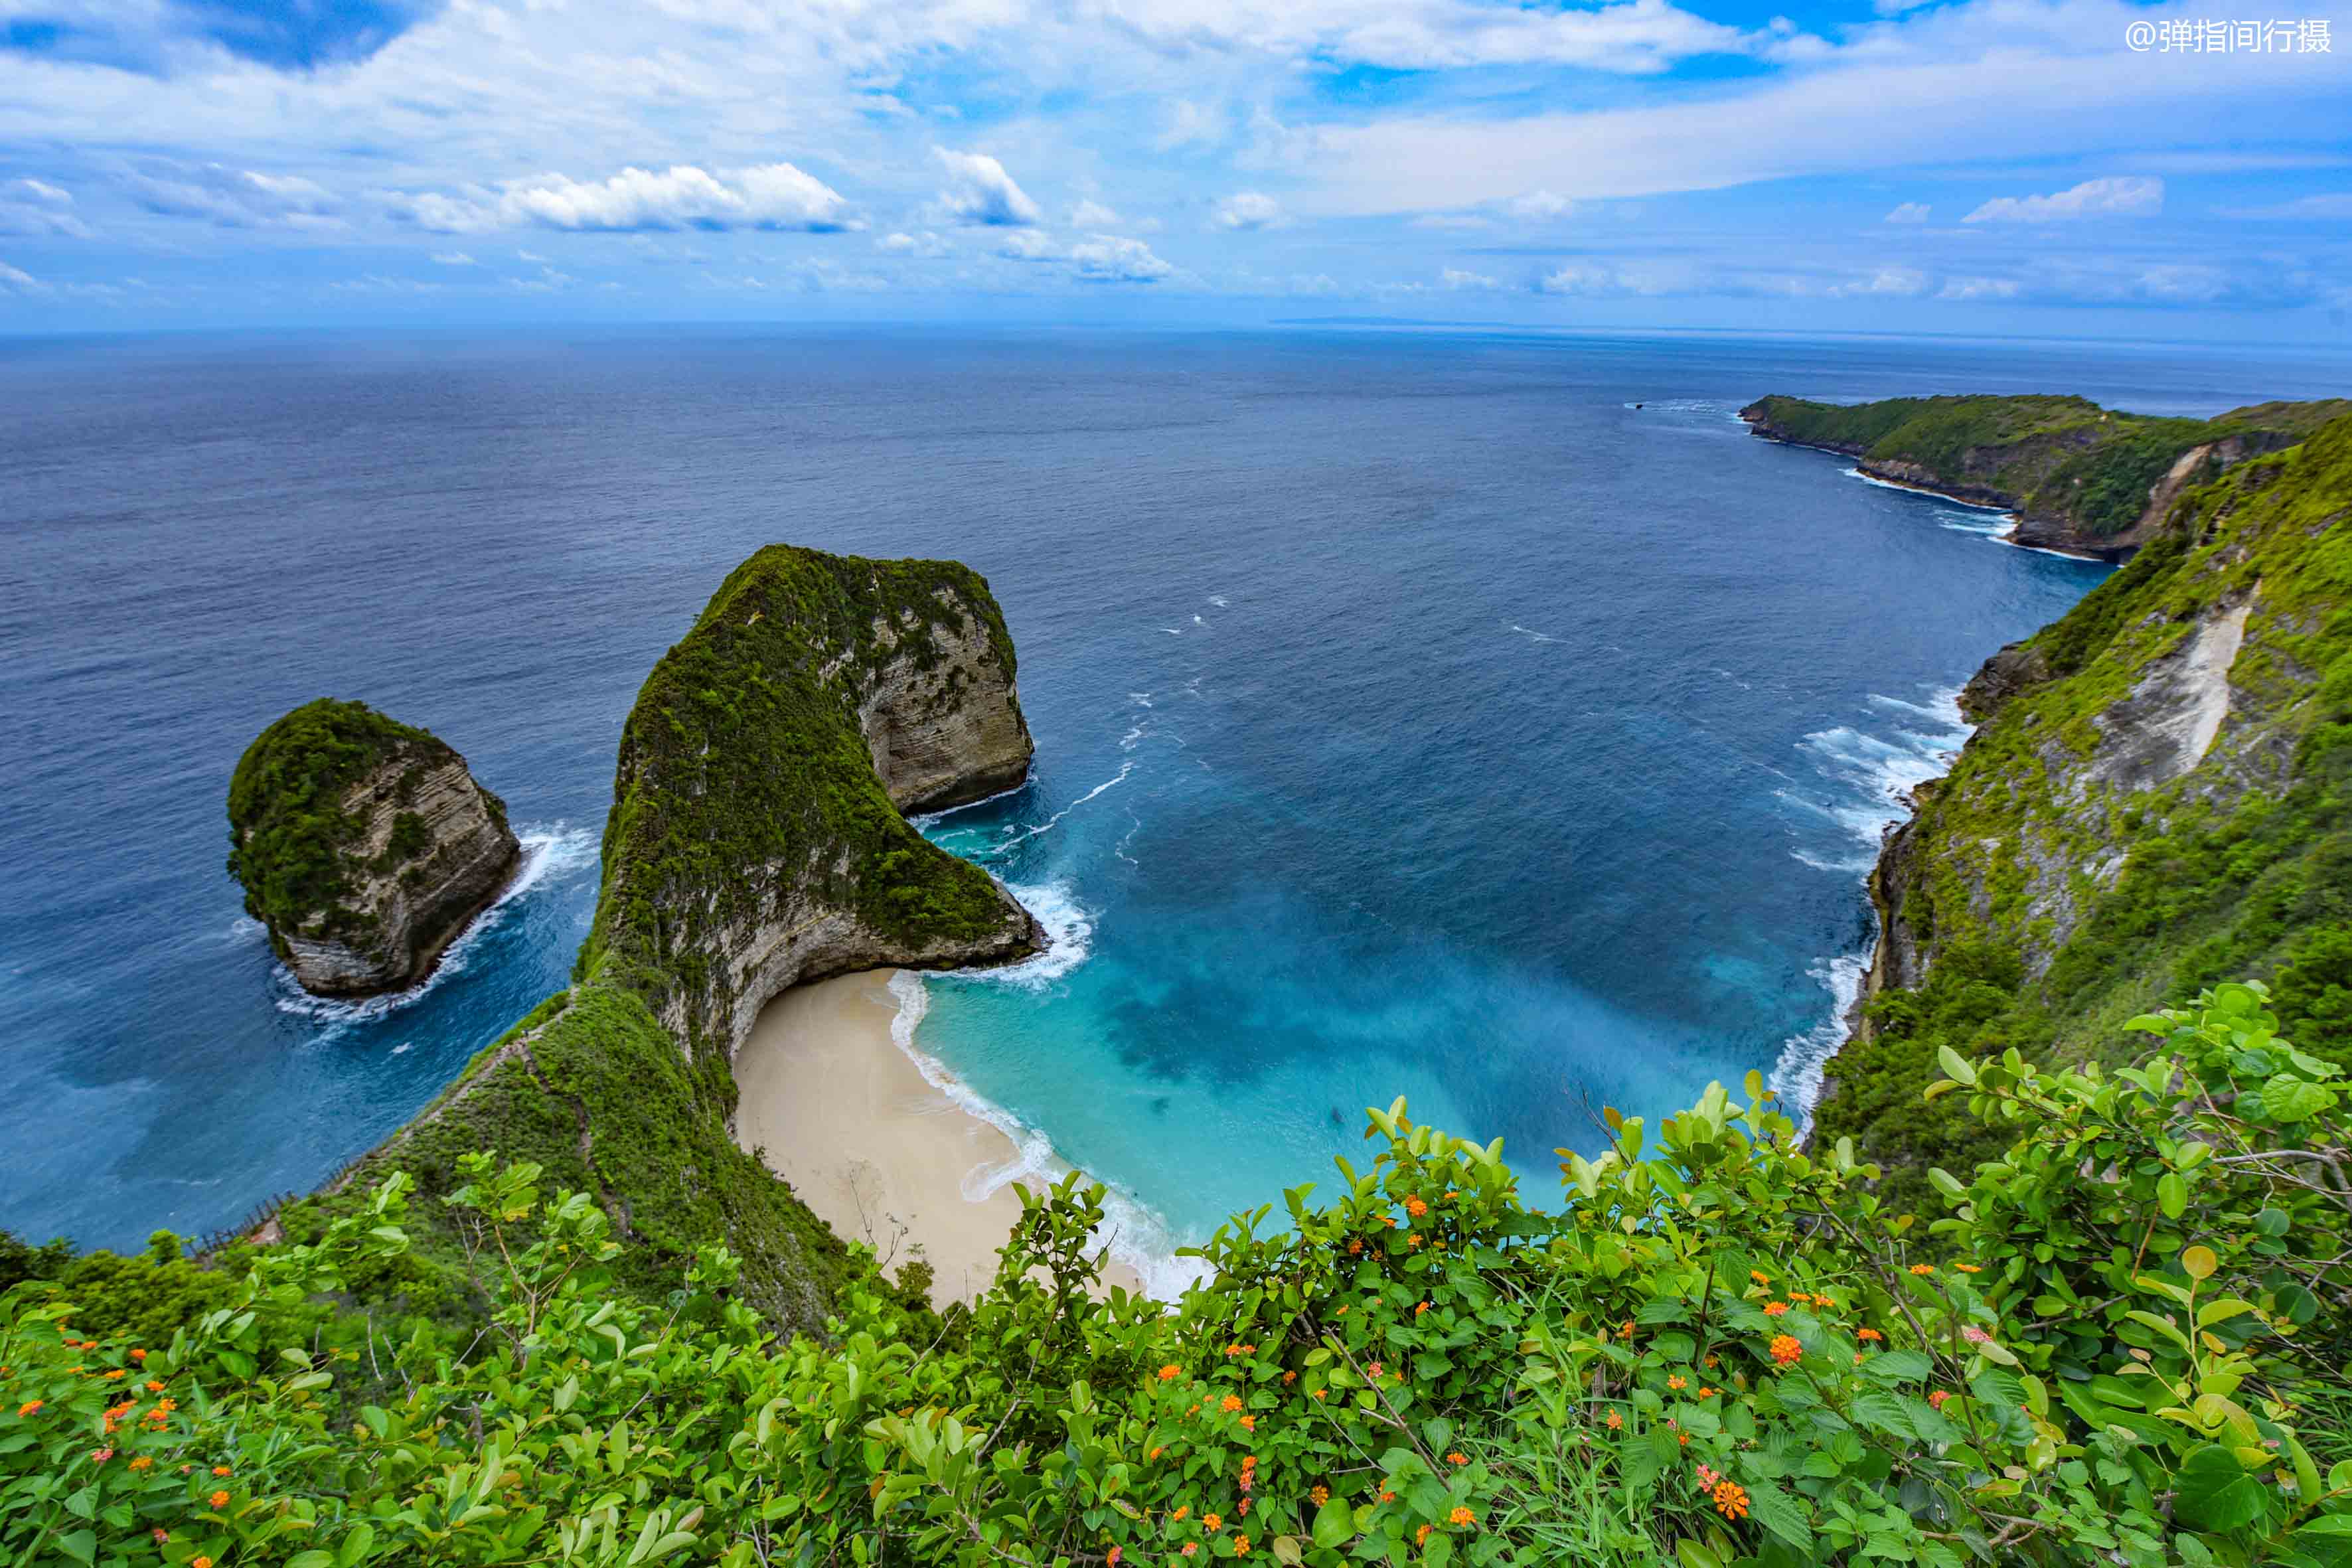 印尼新晋网红海岛,一直藏在巴厘岛附近,风光奇美却鲜有人知